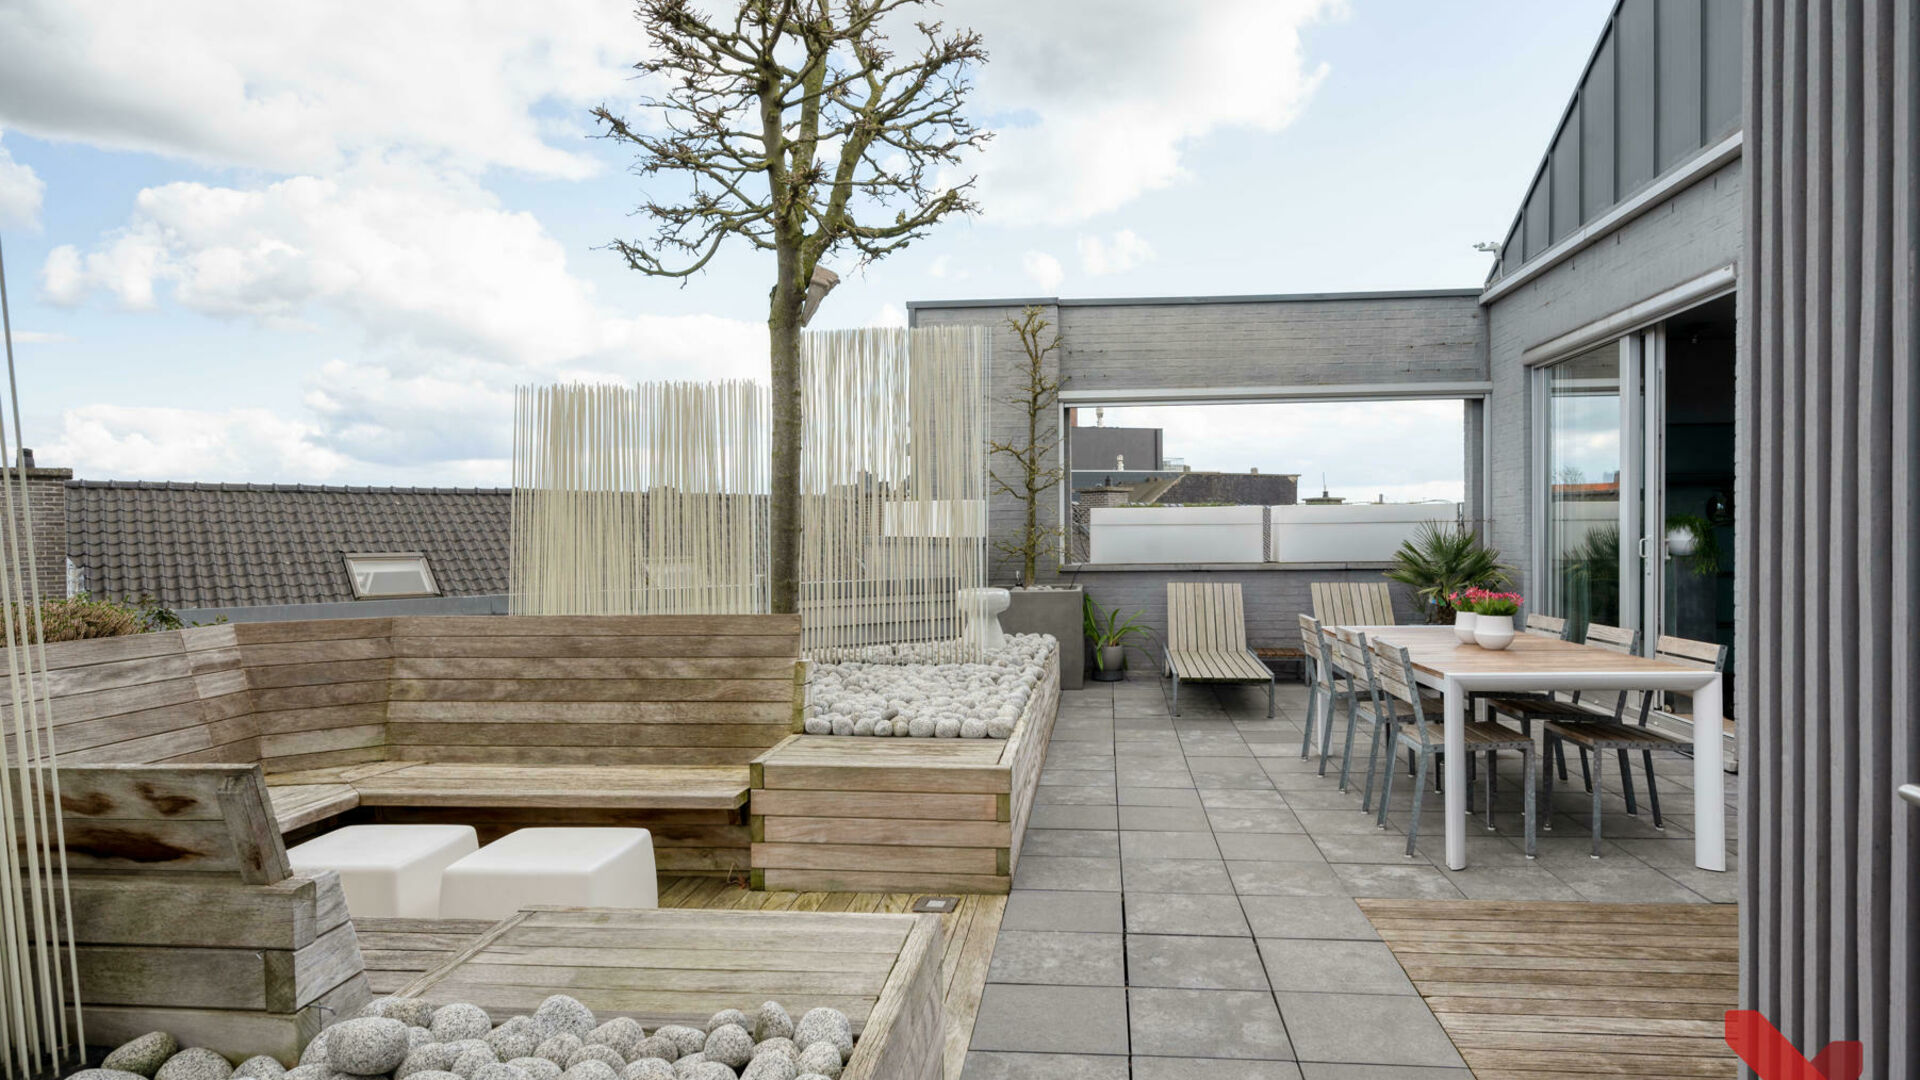 Dit prachtige luxe duplex appartement is gelegen aan de rand van Tienen centrum en biedt de perfecte combinatie van luxueus en stijlvol wonen. Het pand is afgewerkt met hoogwaardige materialen en beschikt over een ruim, zonnig terras.

Deze living is inge